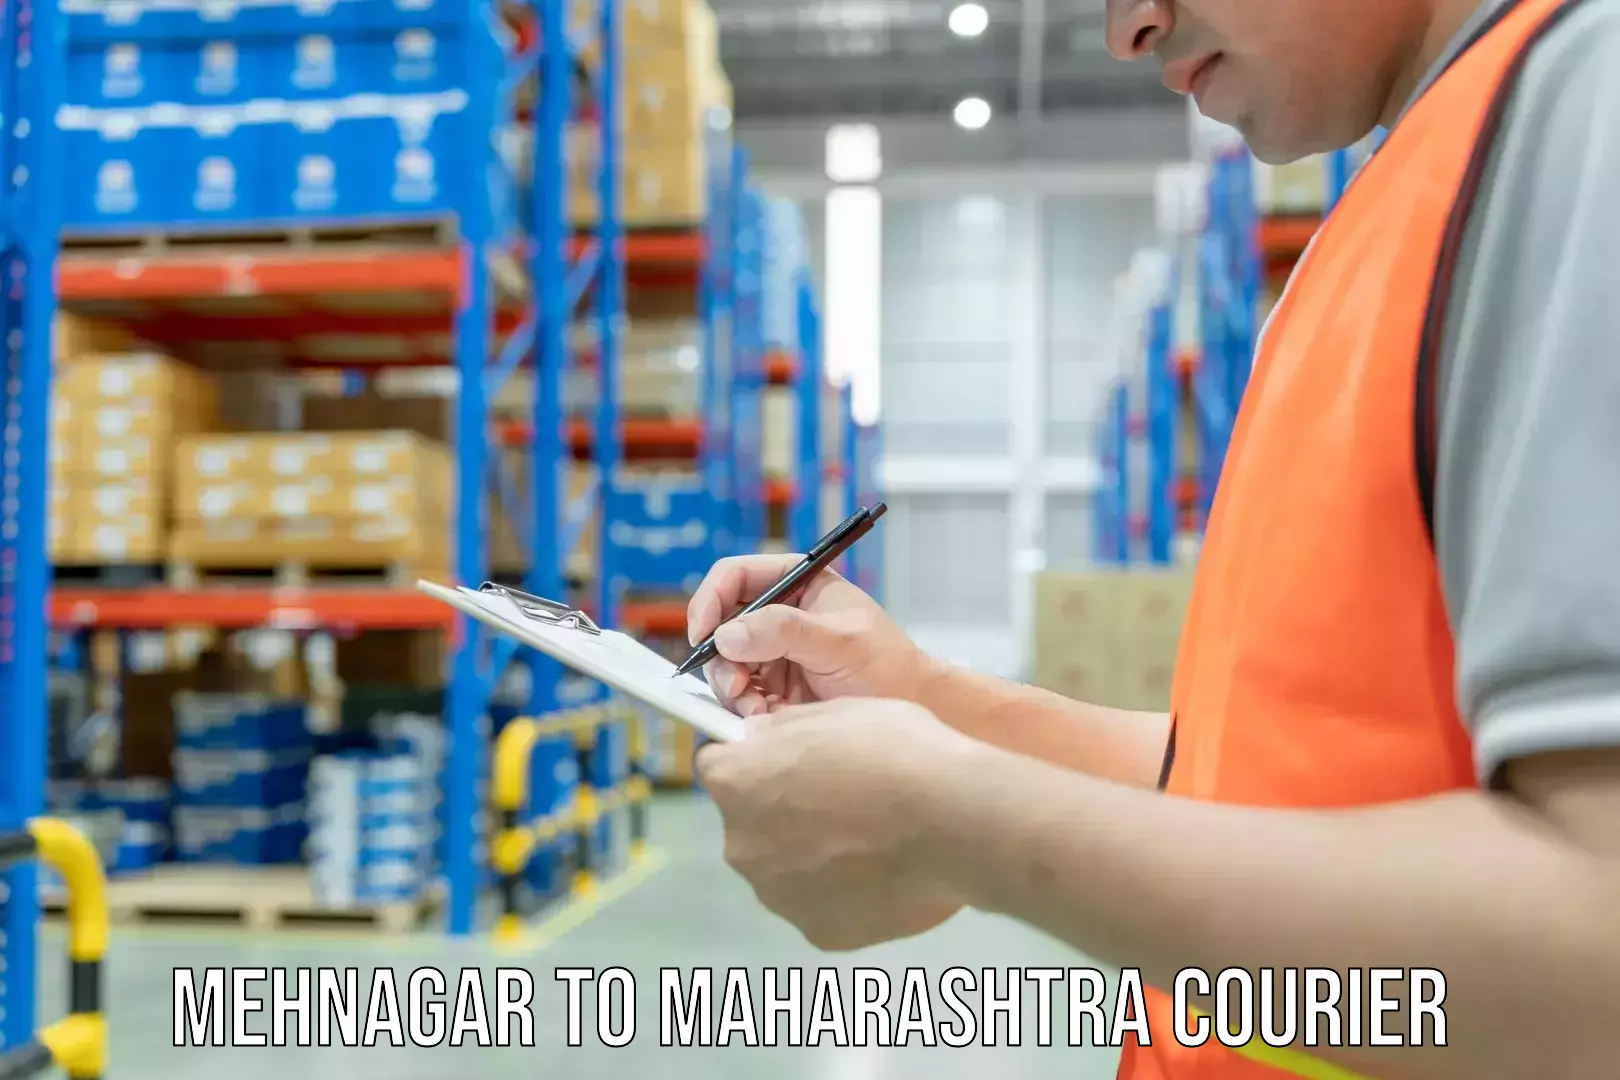 Specialized moving company Mehnagar to Maharashtra